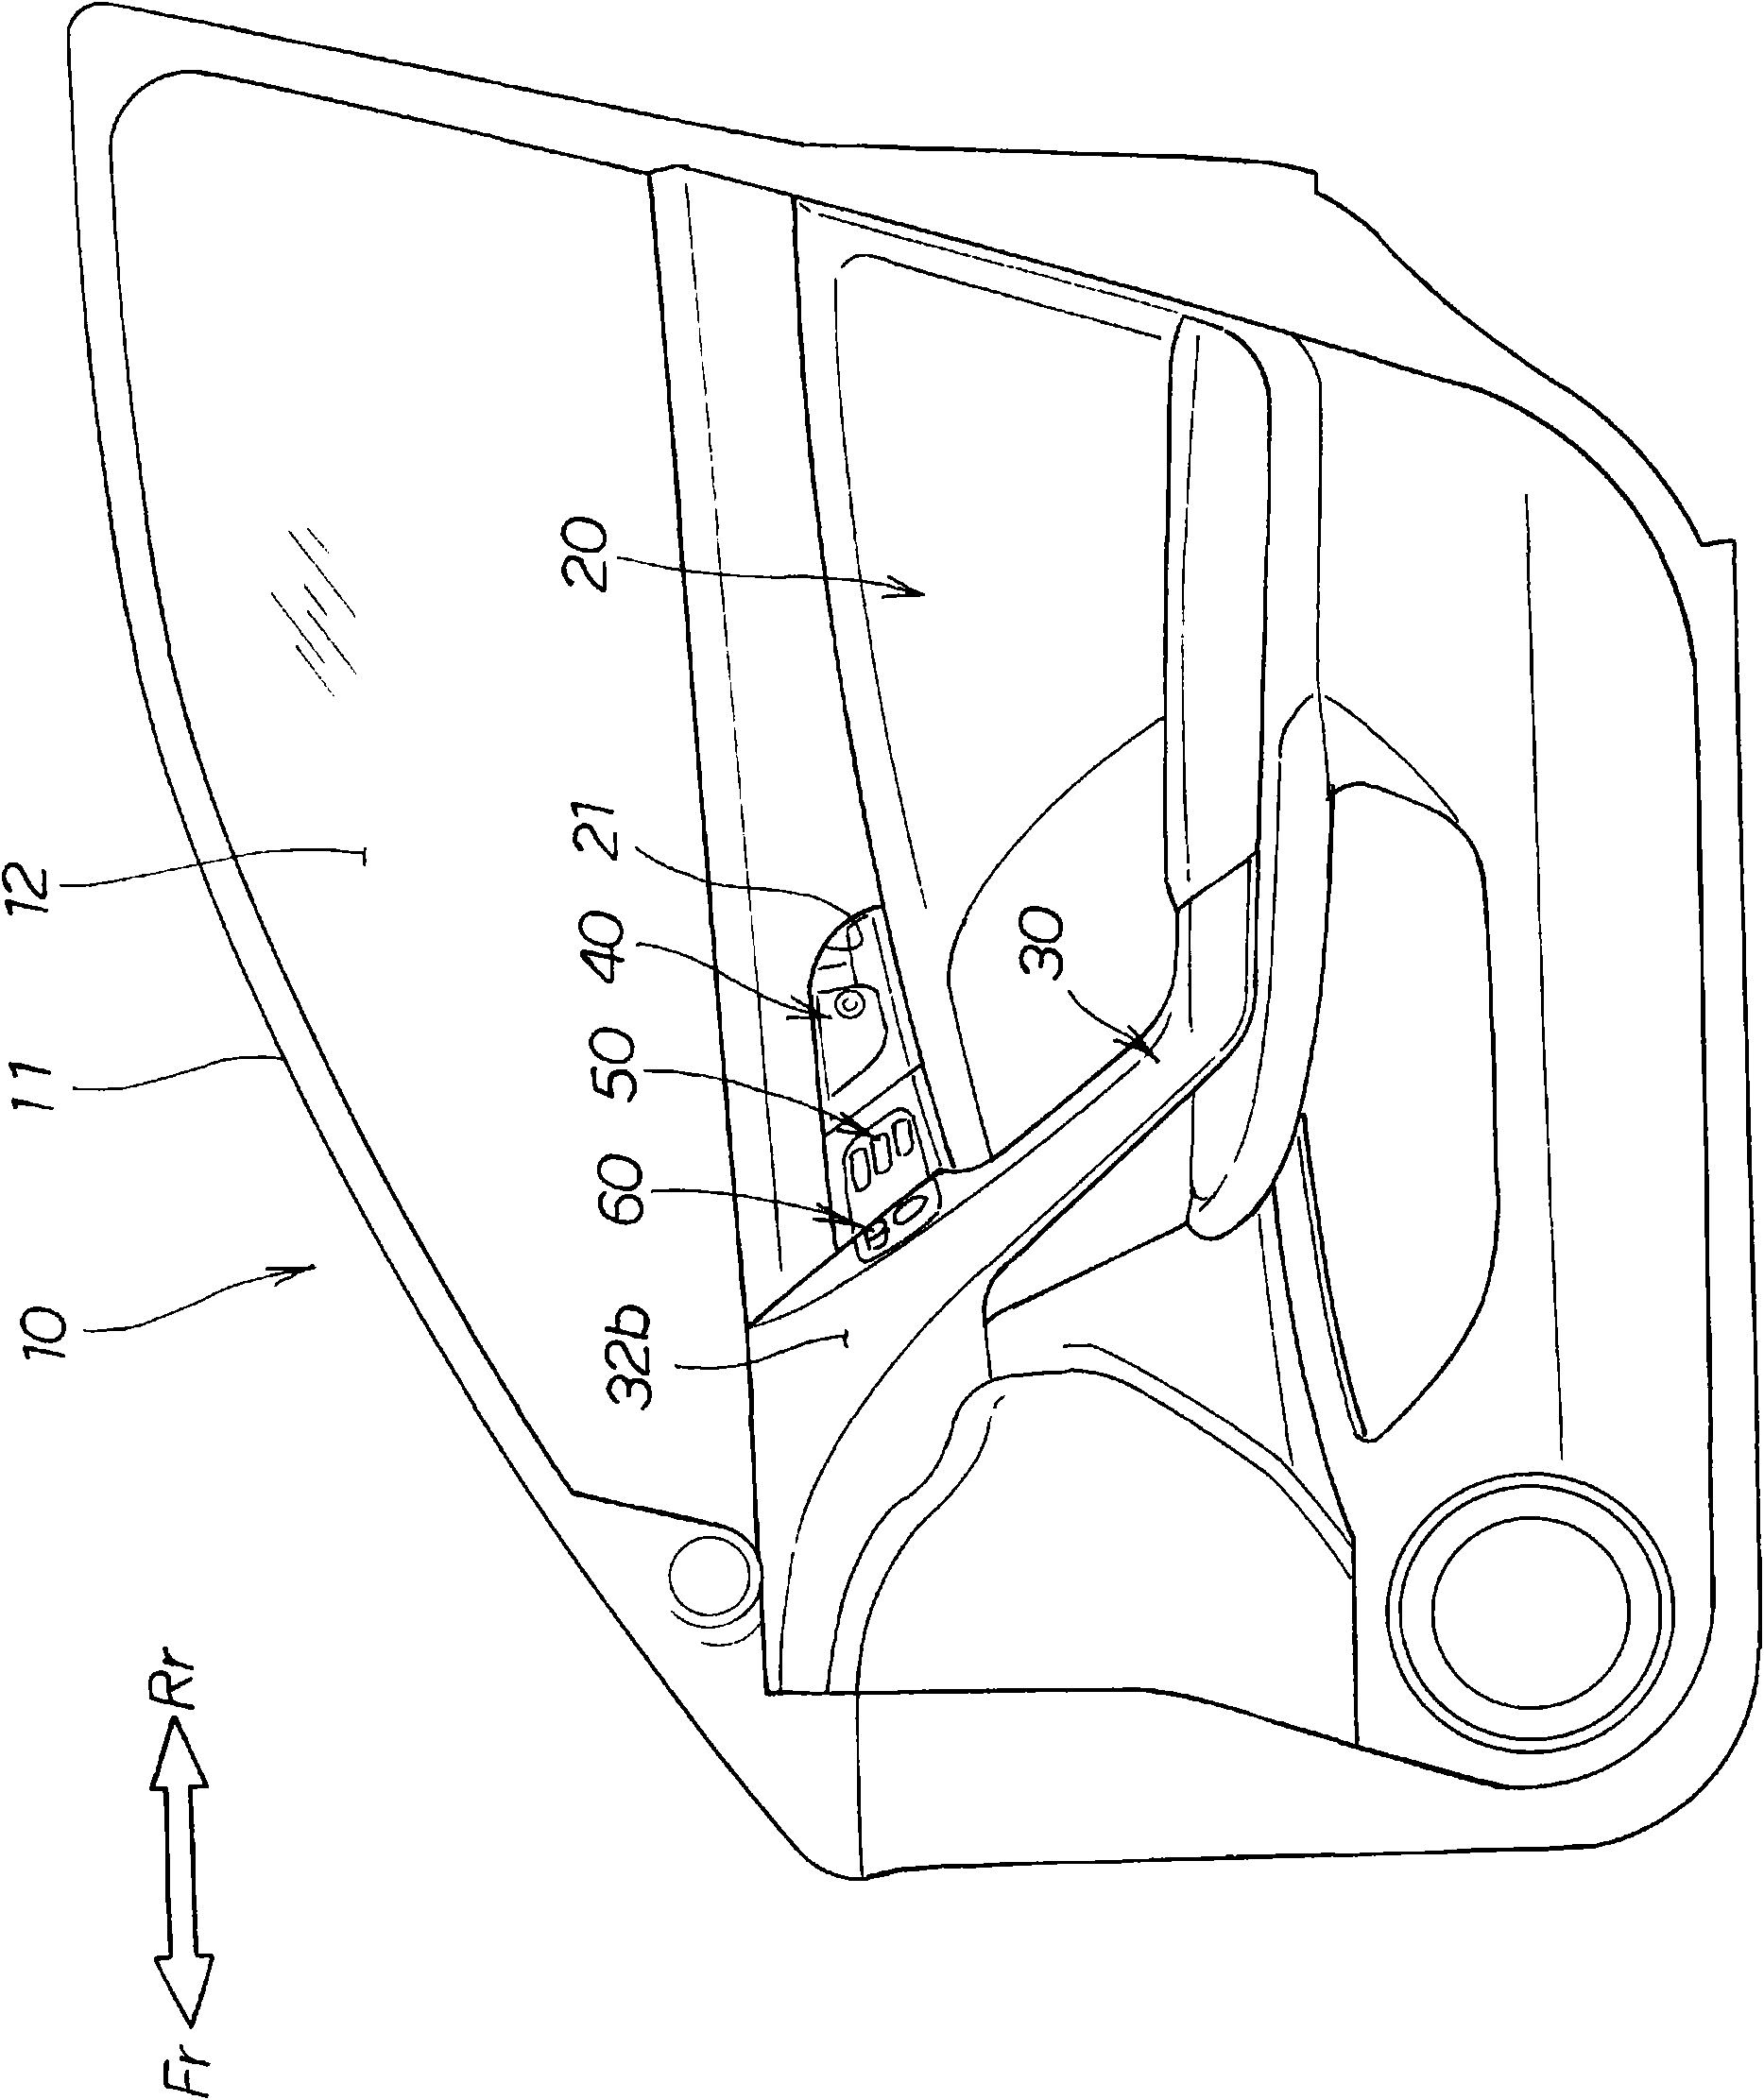 Door structure for vehicle